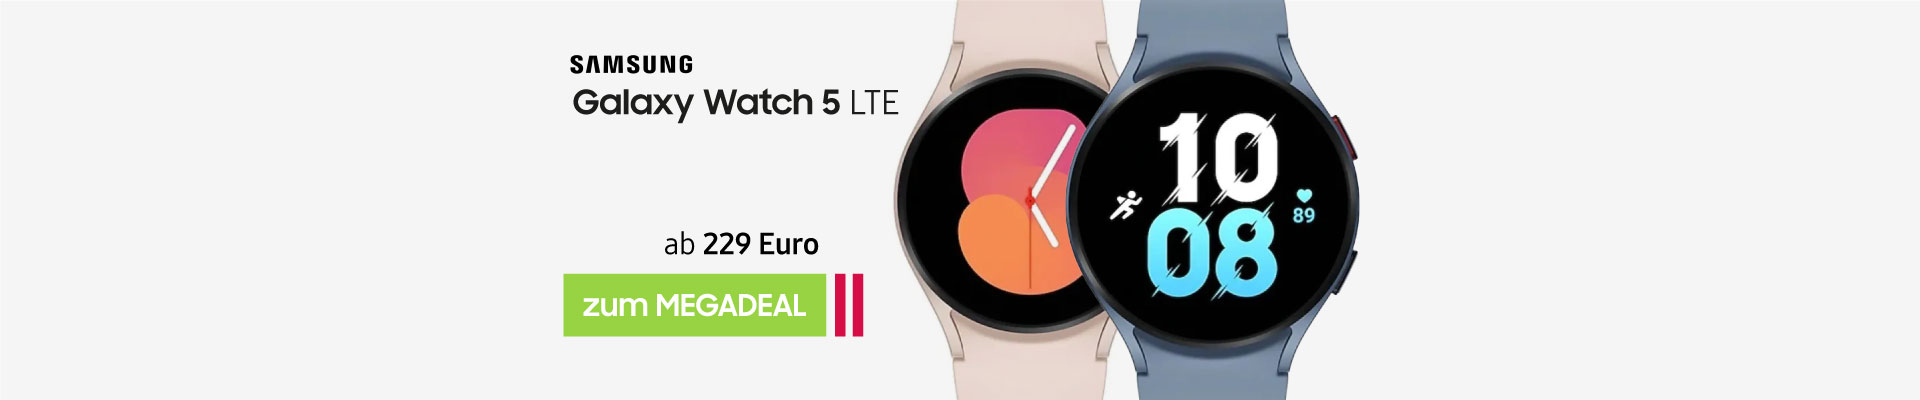 Samsung Galaxy Watch 5 LTE ab 229 Euro hier kaufen